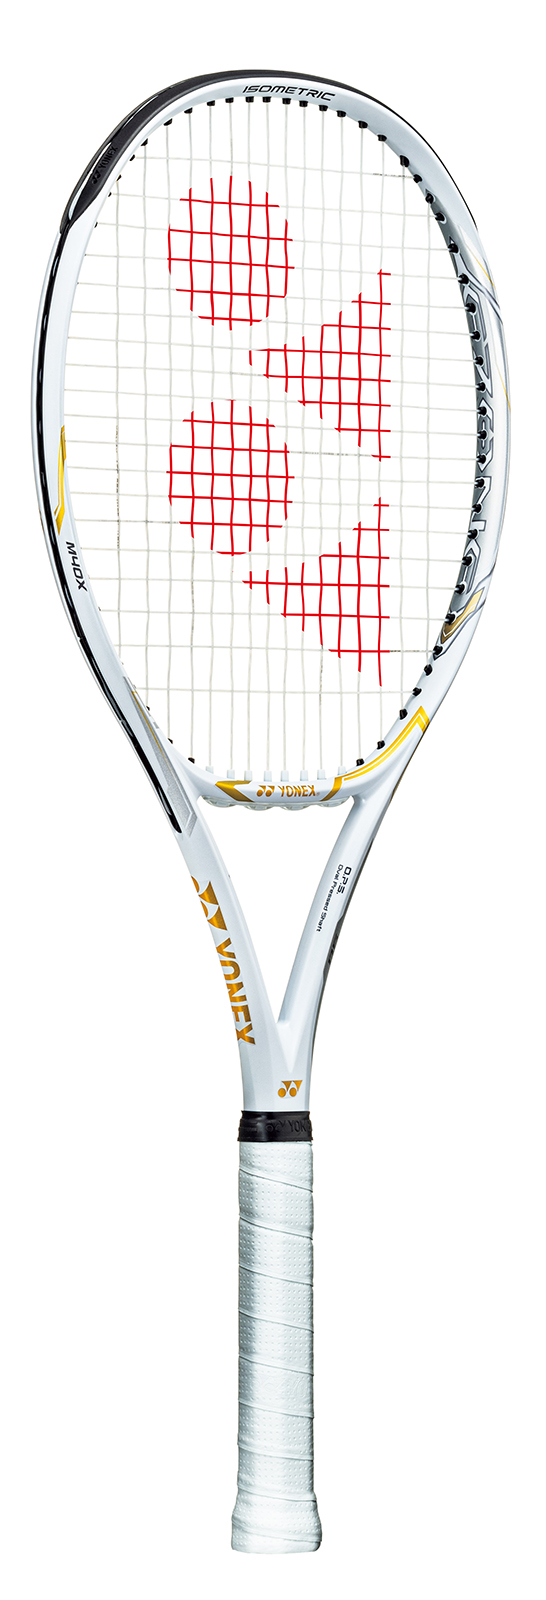 ヨネックス 新ラケット限定発売 - テニス365 | tennis365.net